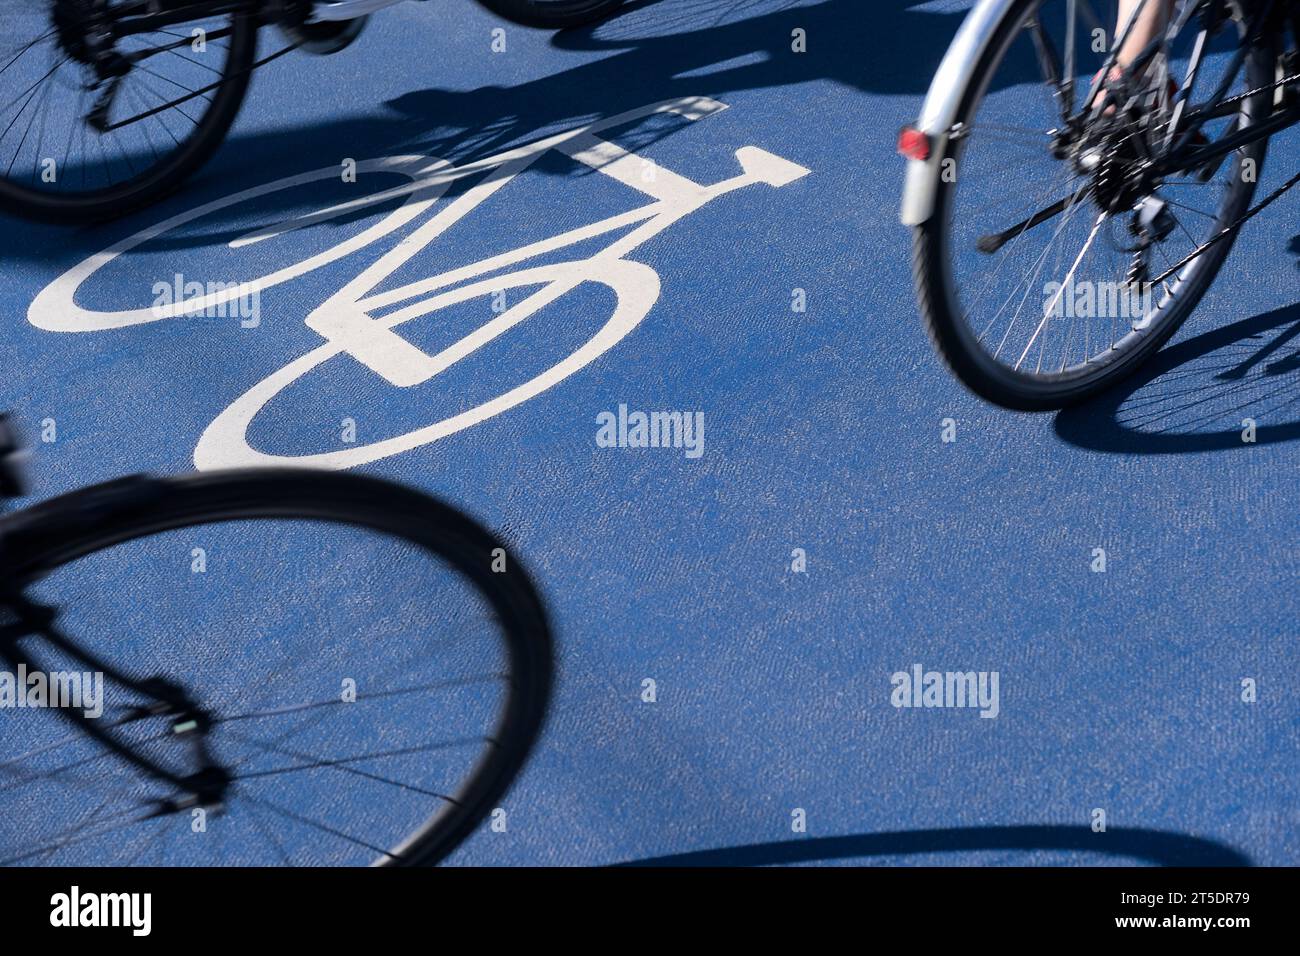 Radfahrer radeln auf dem Stadtradweg Fahrradboulevard mit blauer Radmarkierung Stockfoto